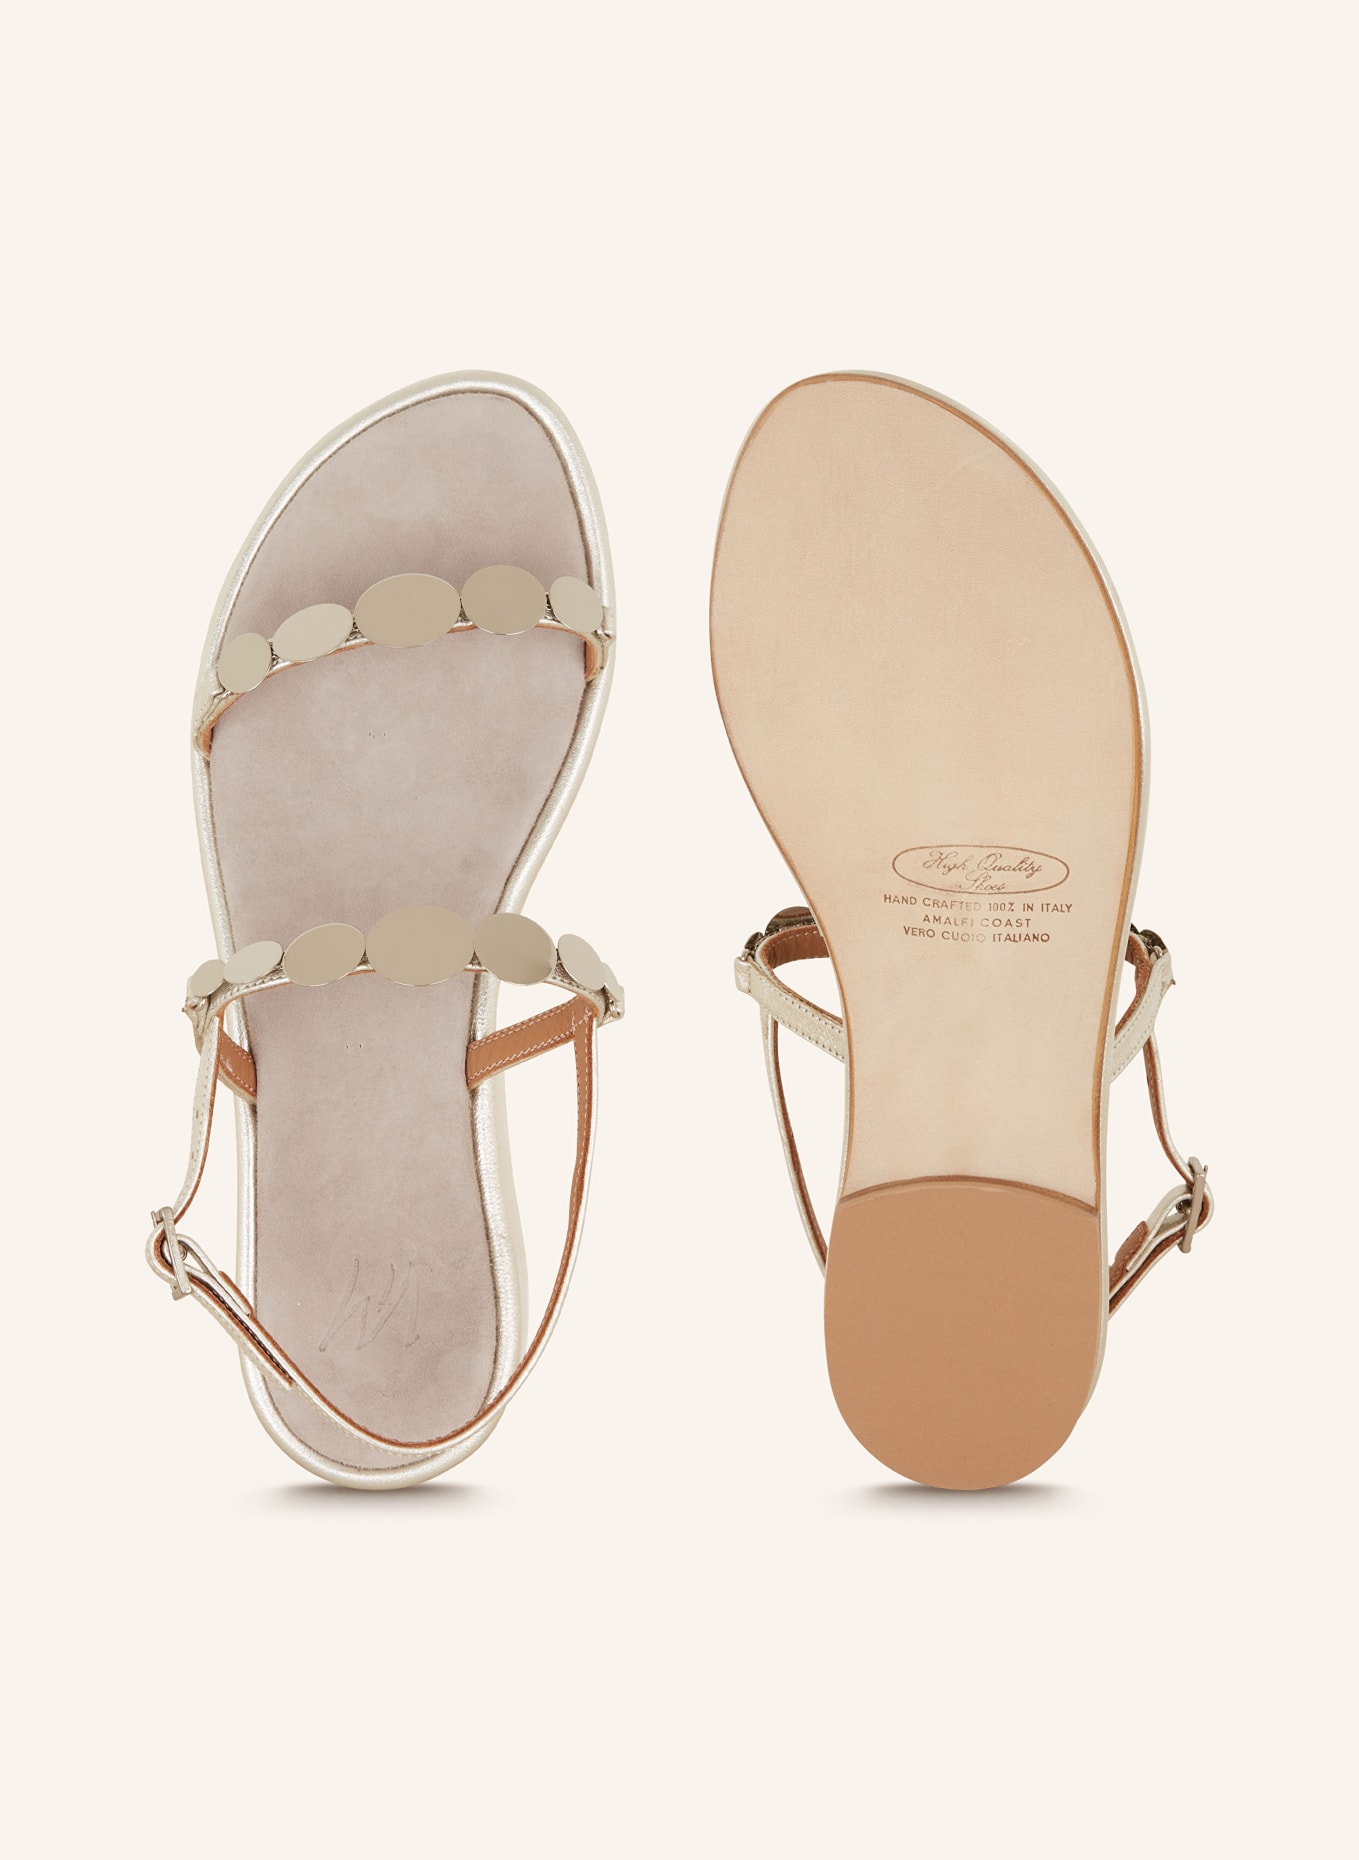 VIAMERCANTI Sandals PIOPPI, Color: SILVER (Image 5)